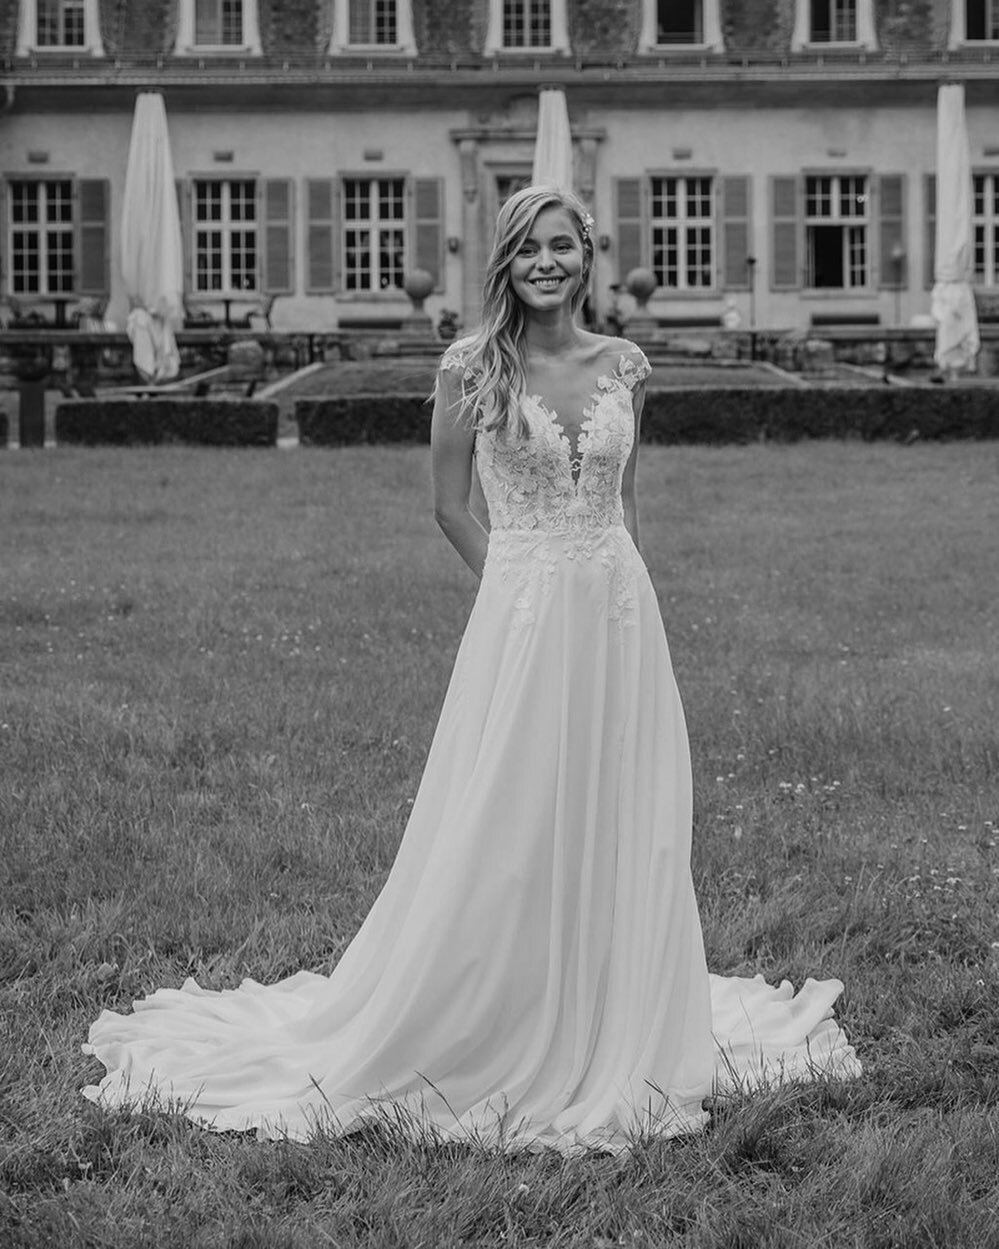 Mit seinem sanften, romantischen Look ist dieses leichte A Line-Modell das perfekte Brautkleid. ☁️

_____
#braut #brautkleid #braut2022 #braut2023 #bride #bridetobe #bridedress #bridetobe2022 #bridetobe2023 #hochzeit #hochzeitskleid #wedding #wedding